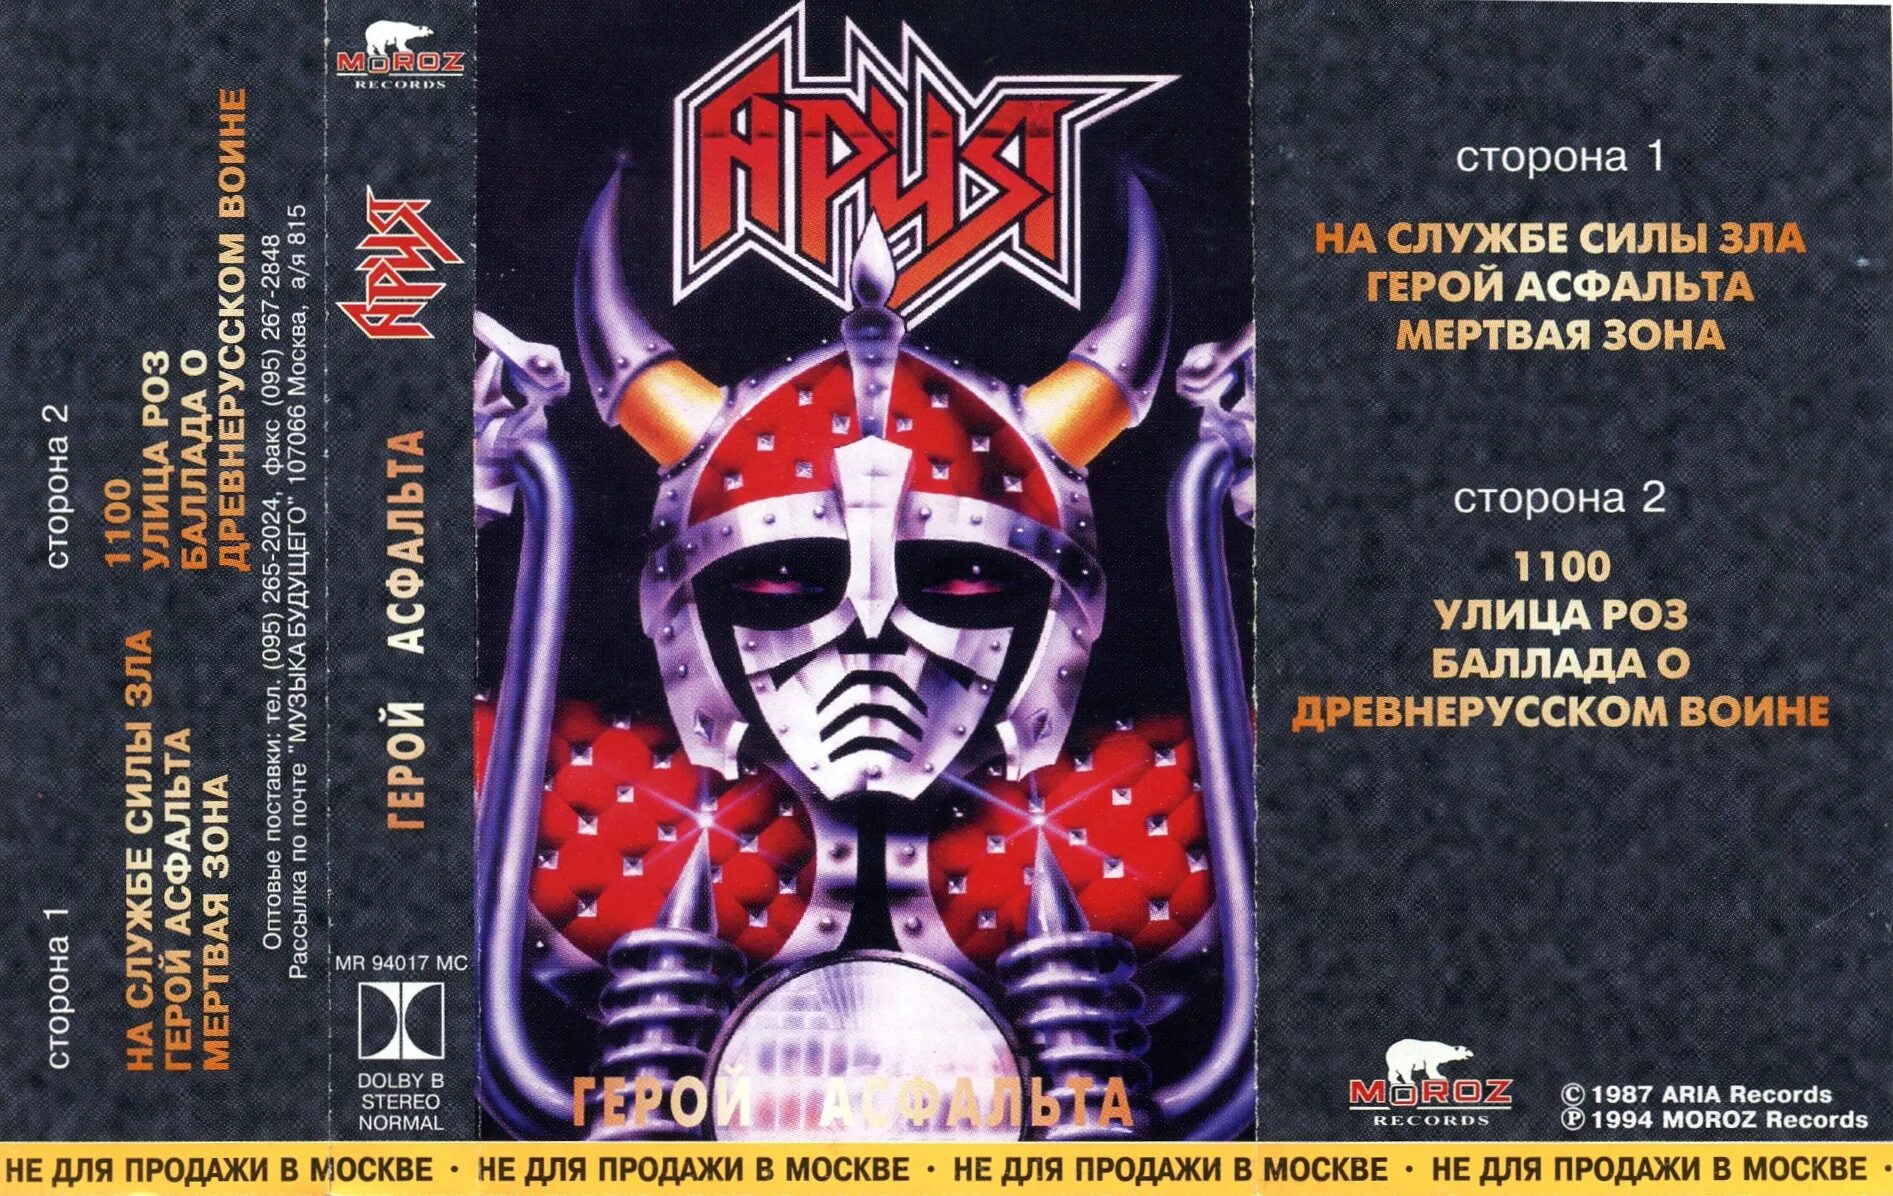 Альбом арии герой. Ария 1987 альбом. Ария 1987 герой асфальта обложка. Группа Ария кассета. Ария герой асфальта кассета.